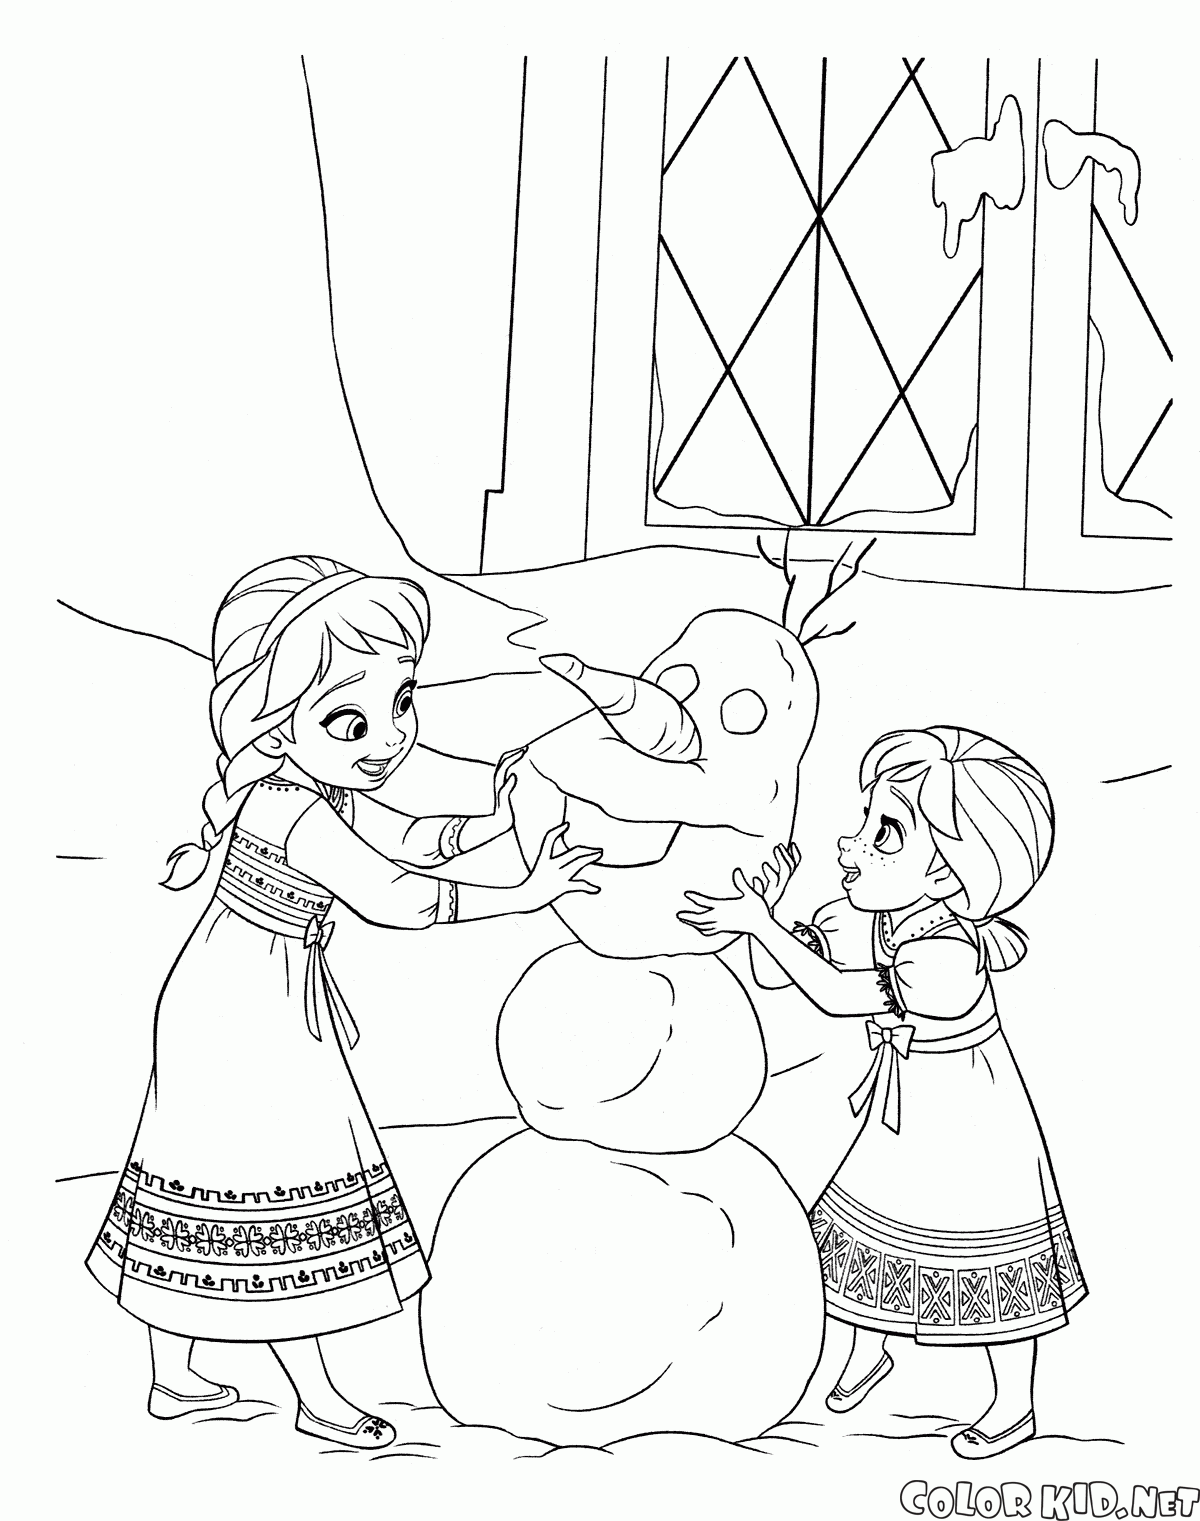 Elsa e Anna como uma criança